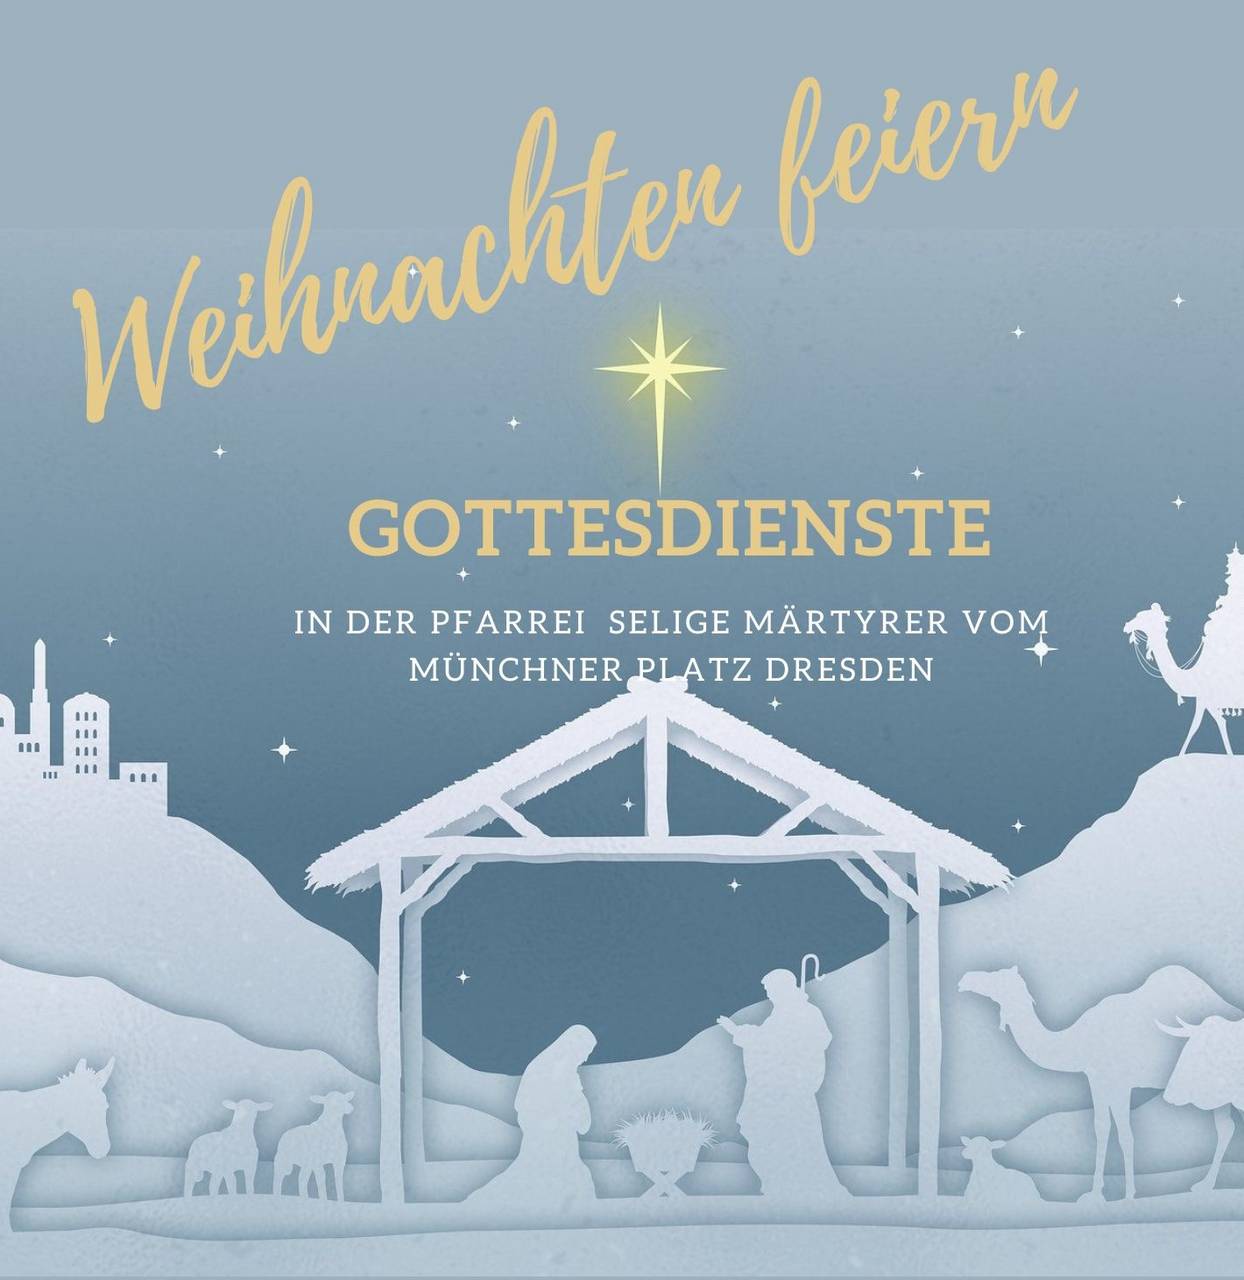 m_white and gold bethlehem church invitation-1 | Kath. Pfarrei Selige Märtyrer vom Münchner Platz - Aktuelles - Weihnachten in der Pfarrei